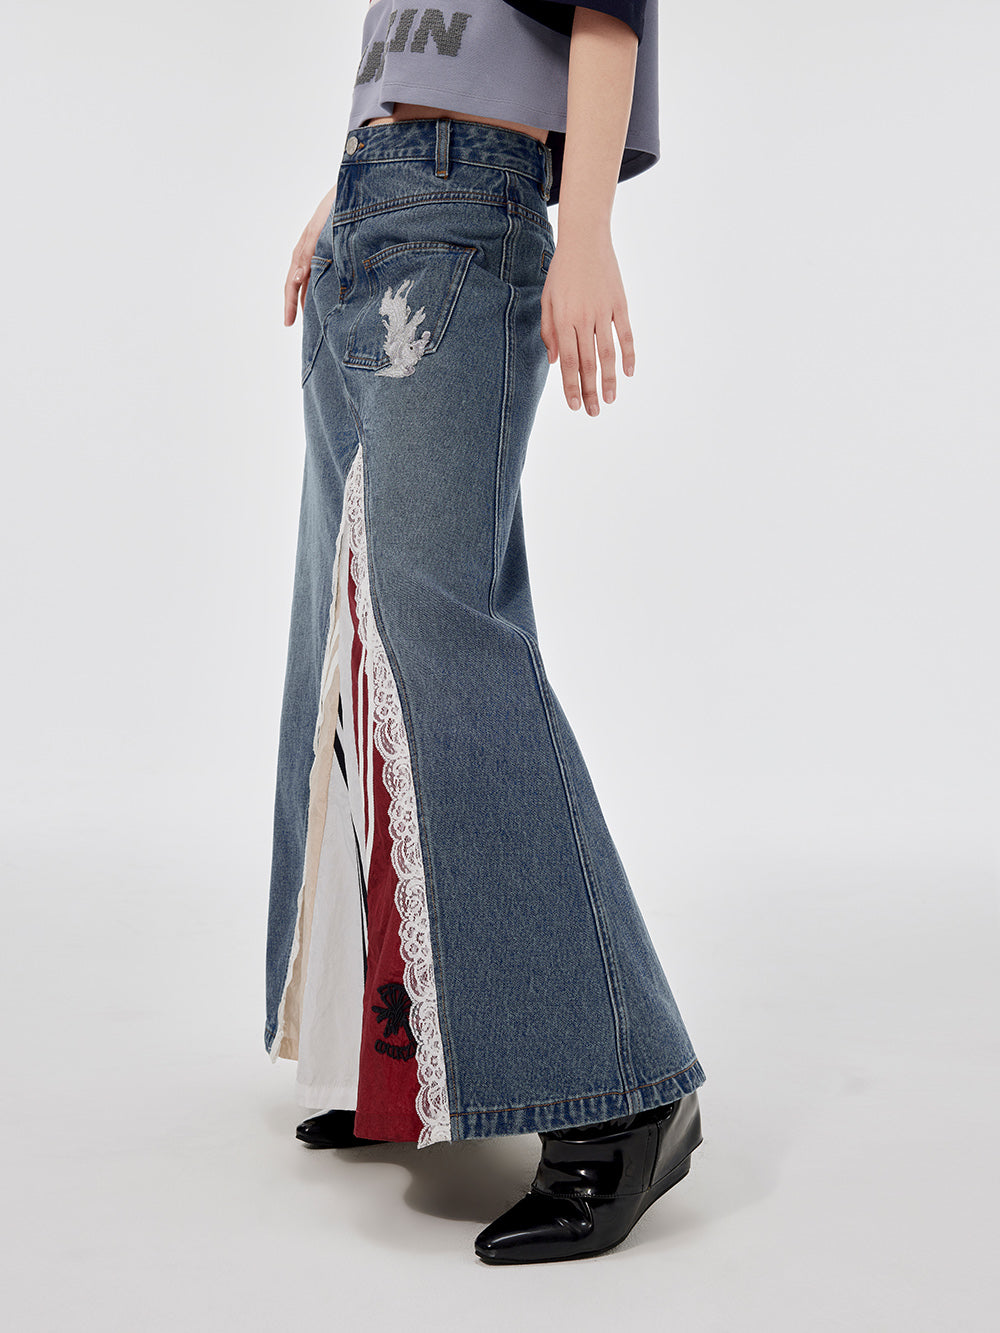 MUKZIN Lace Paneled Fashion Denim Skirt